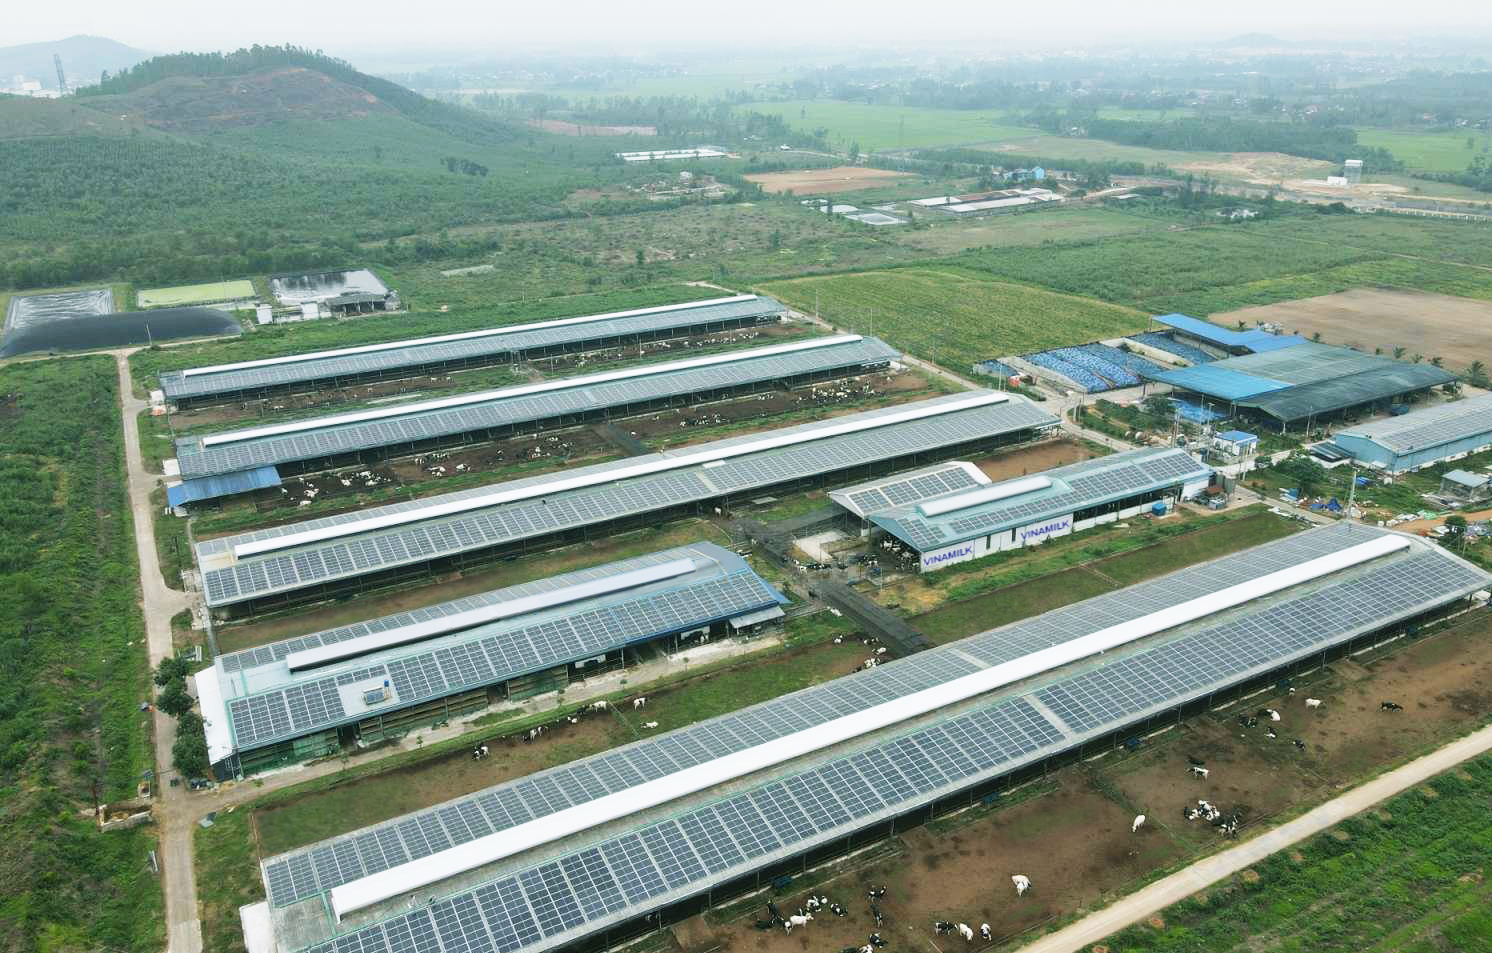 Năng lượng mặt trời đã được đưa vào sử dụng tại trang trại Vinamilk Bình Định từ đầu năm 2021